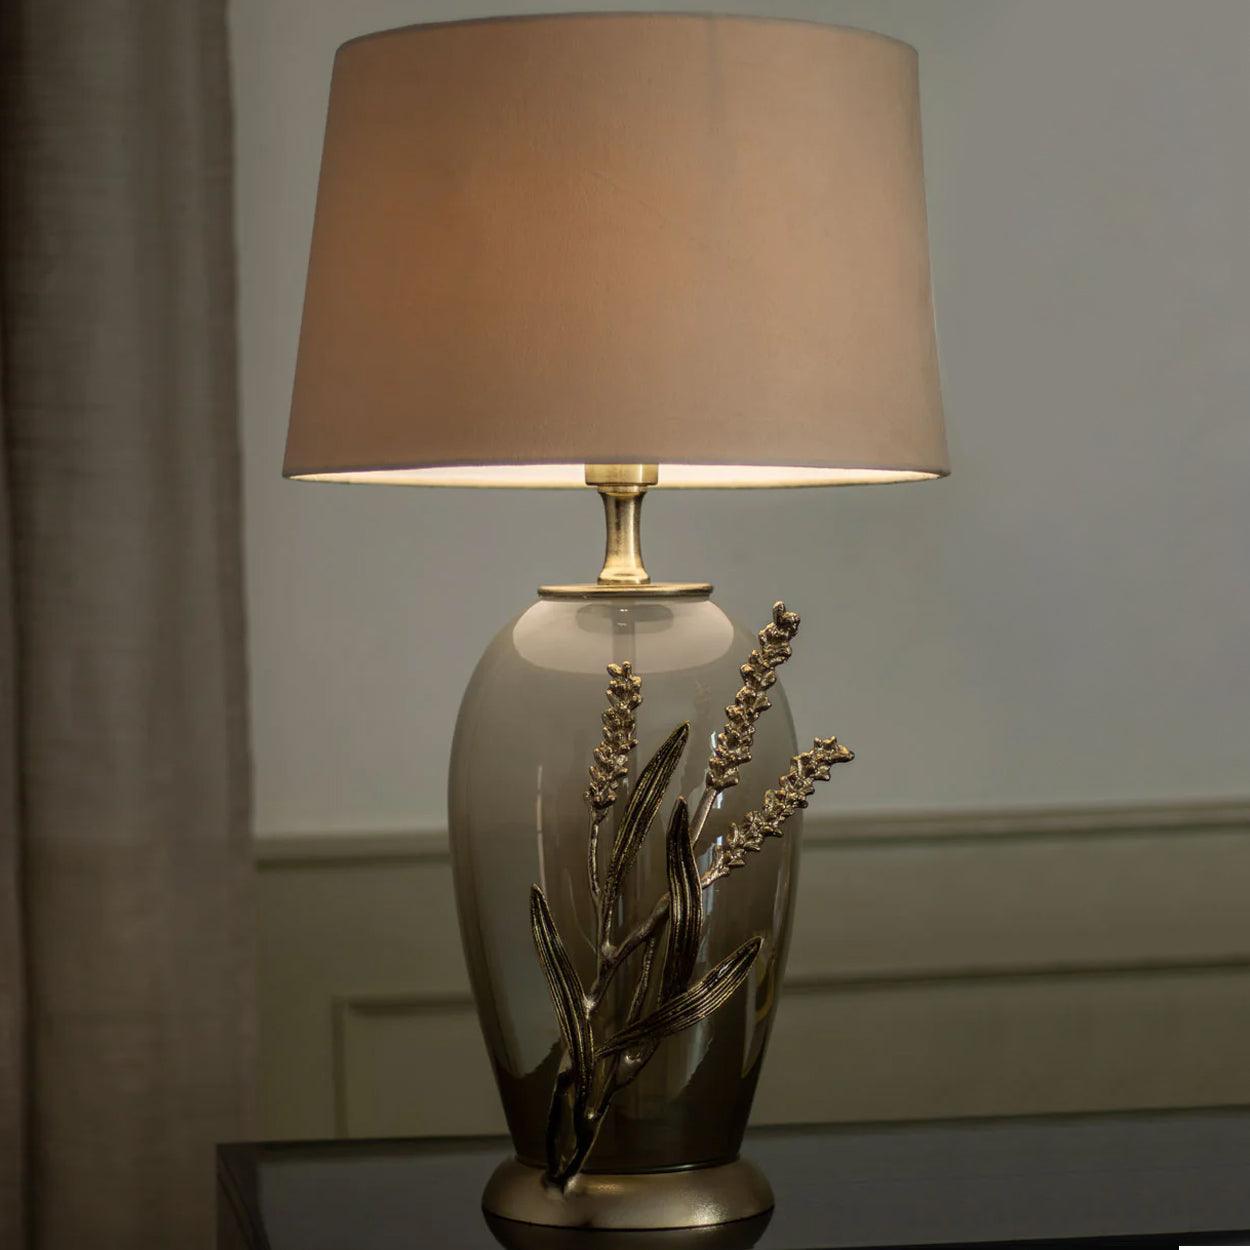 GILDA HANDMADE GLASS AND METAL BEDSIDE TABLE LAMP - Ankur Lighting